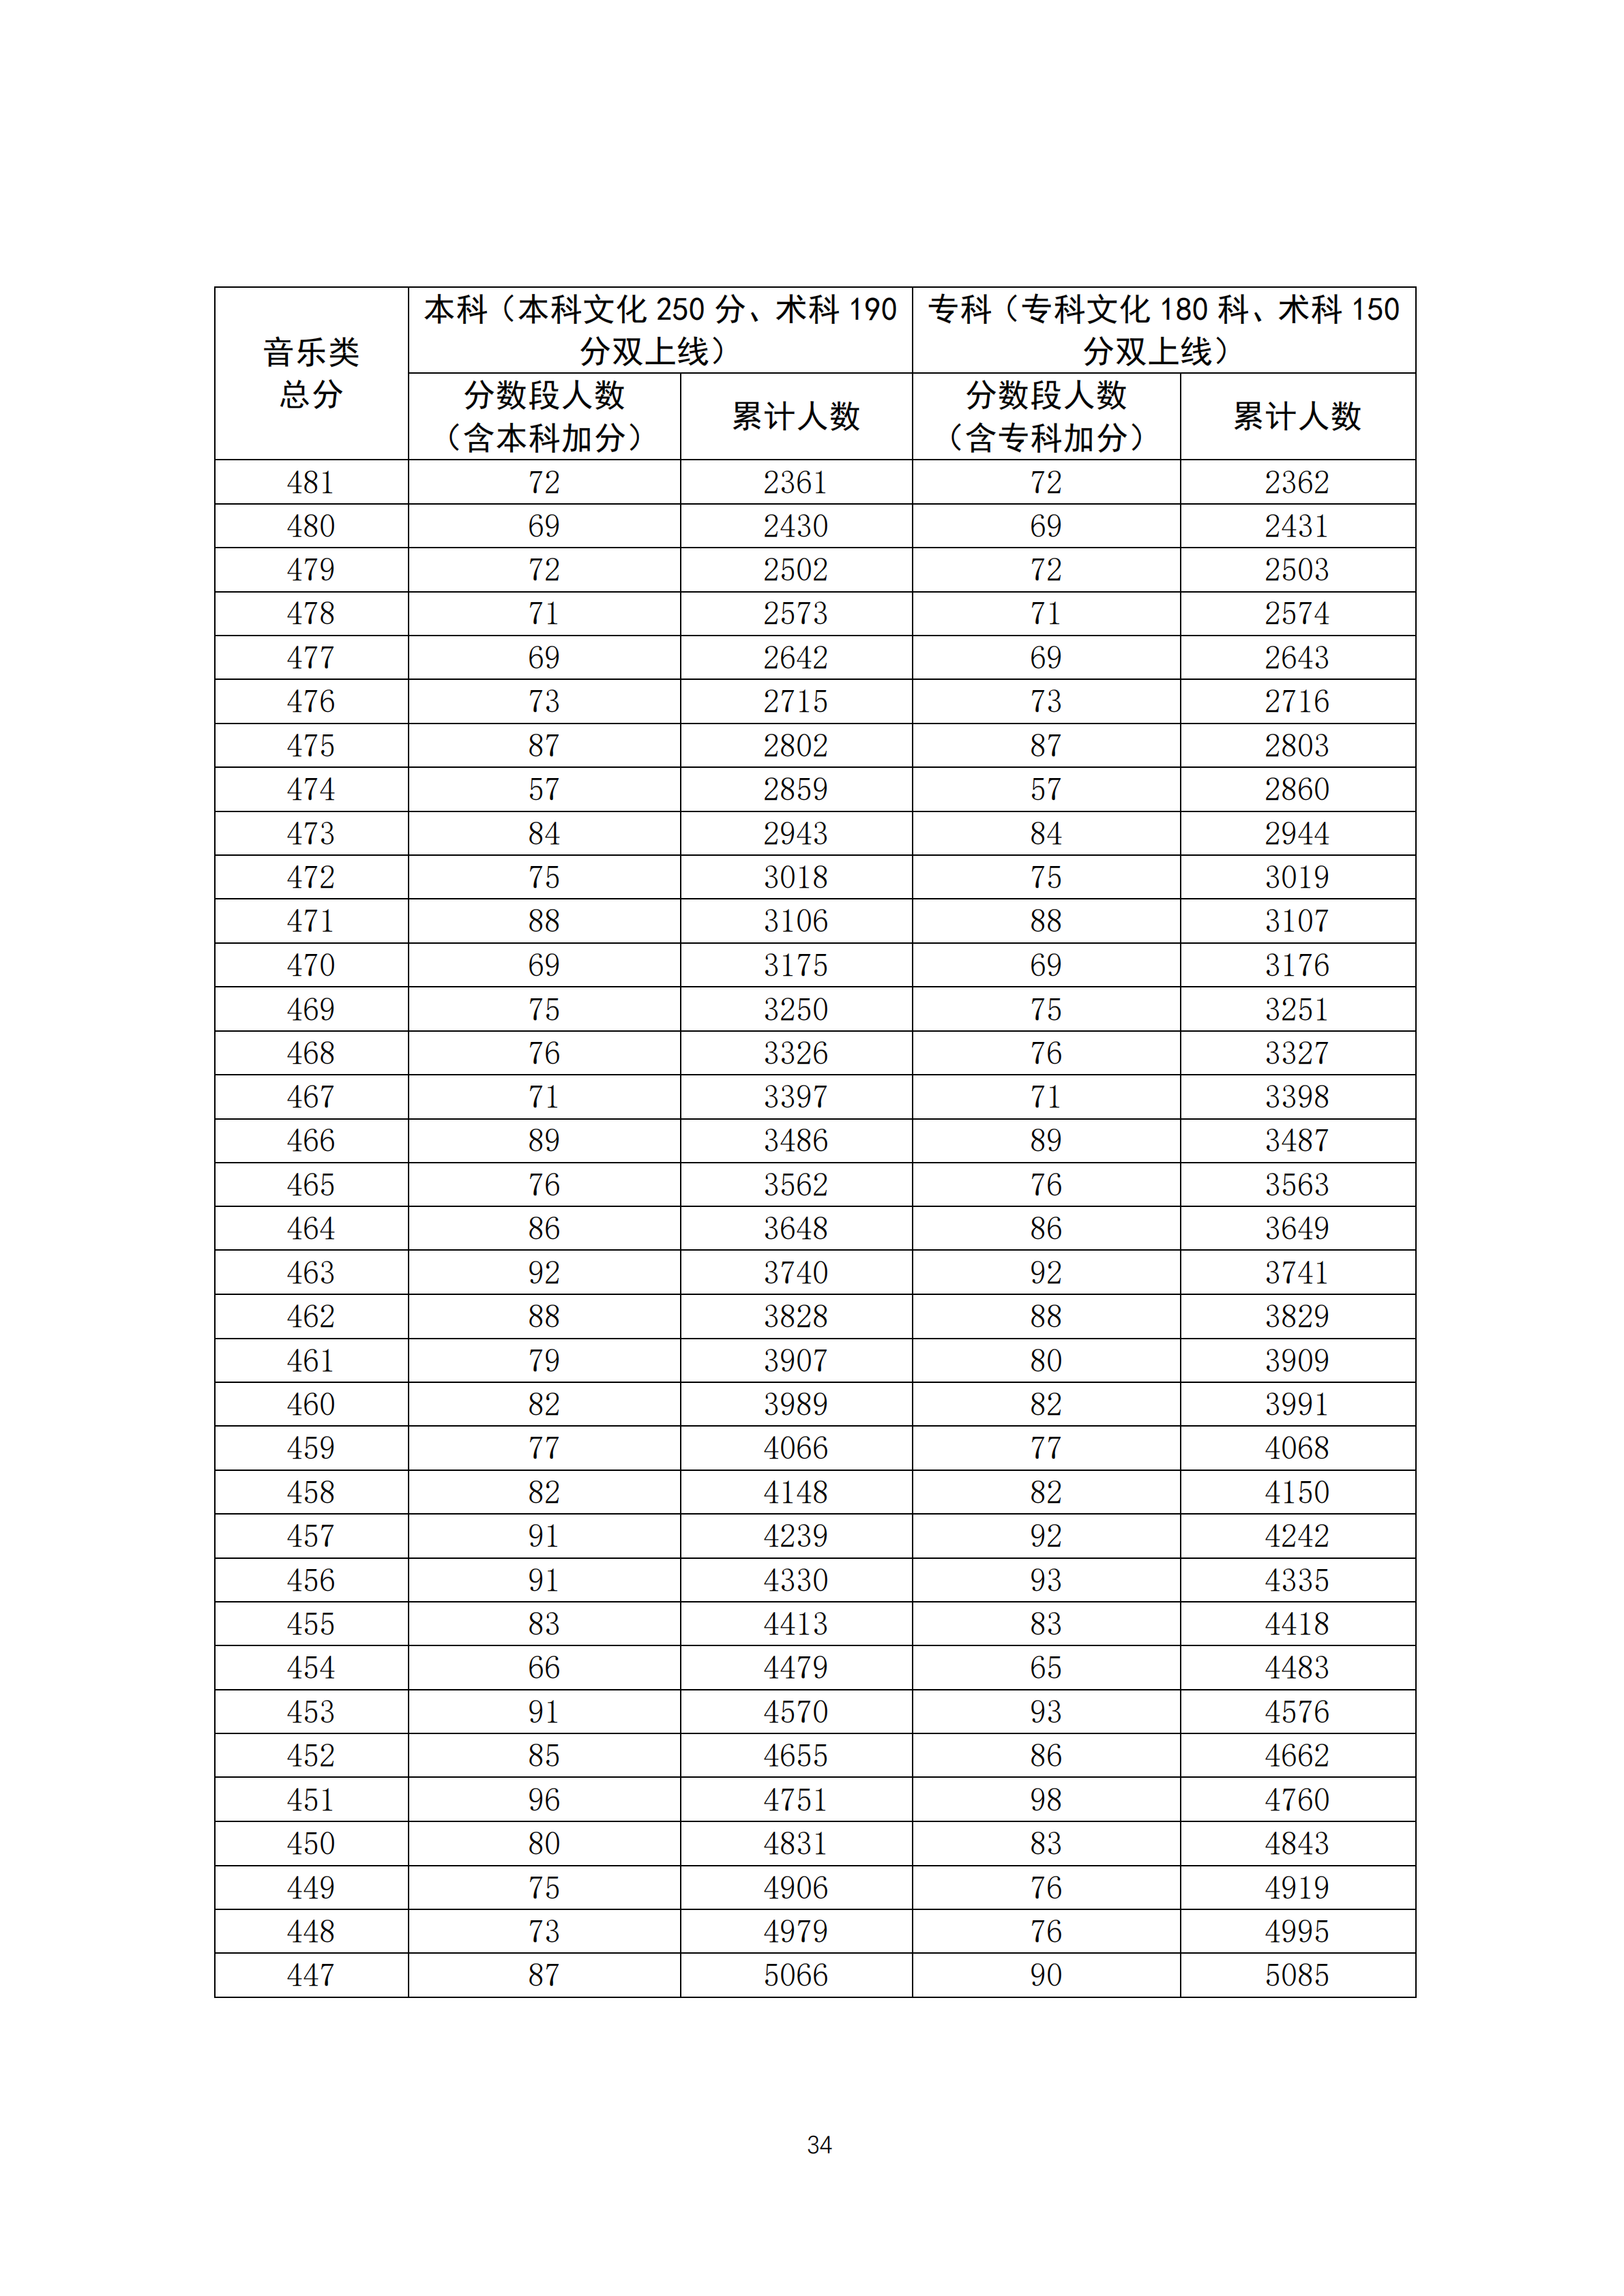 2020广东高考一分一段表 音乐类成绩排名及分数段人数